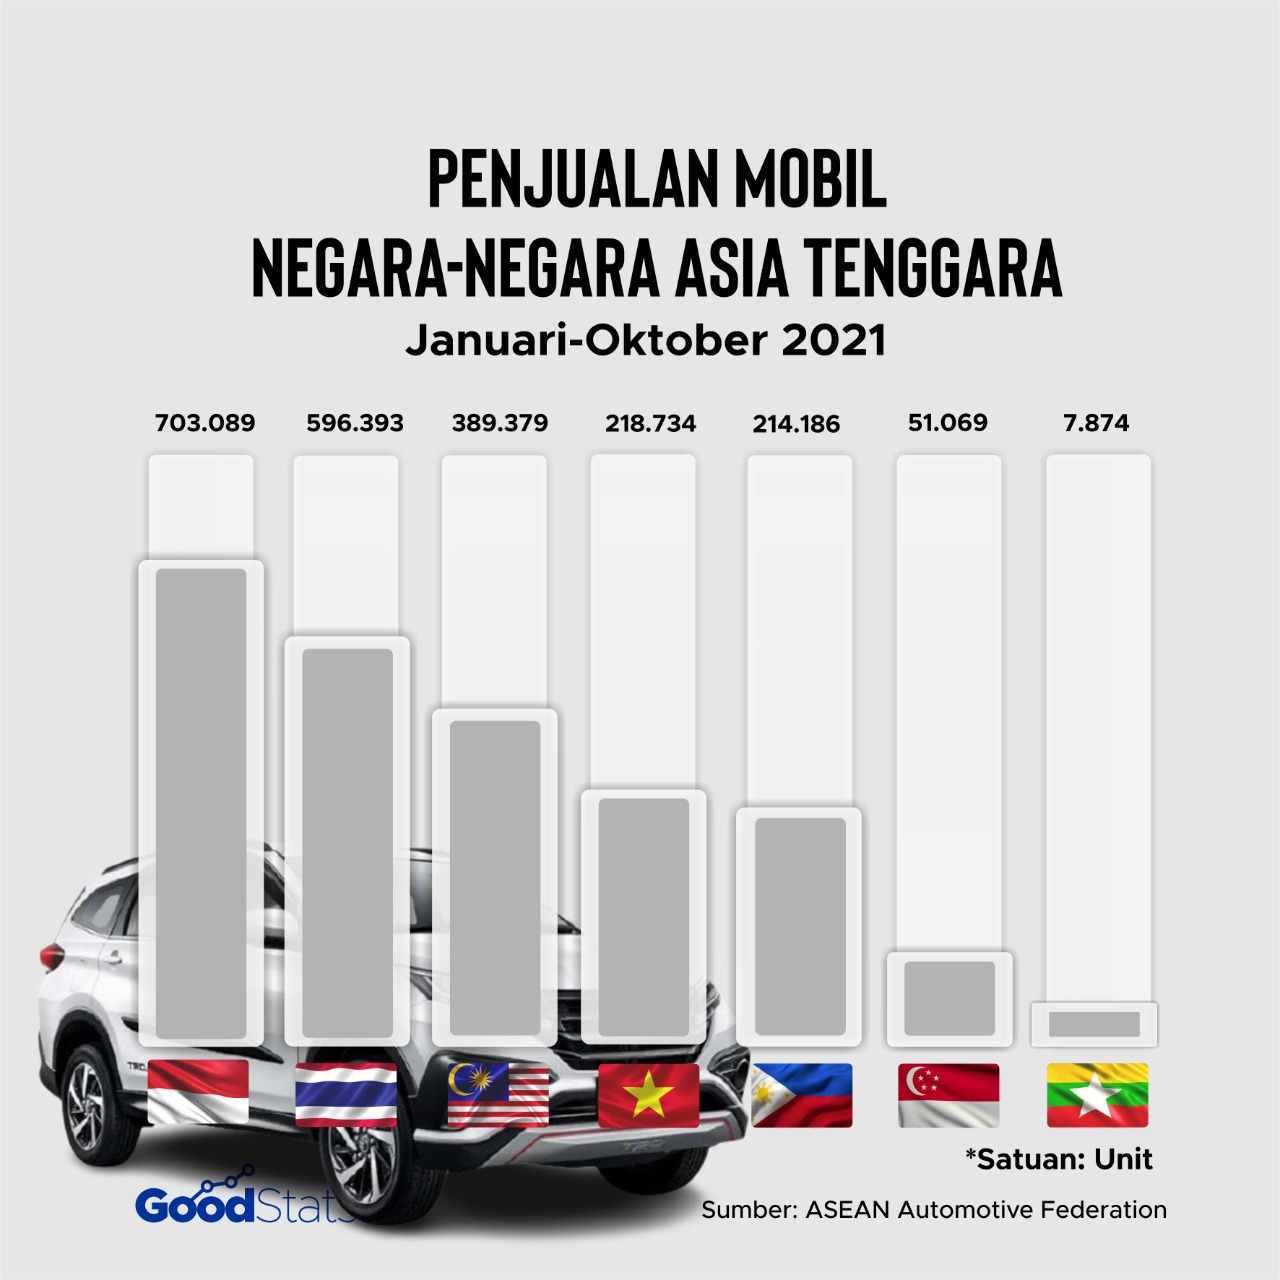 Peringkat penjualan mobil terbanyak di negara Asia Tenggara © GoodStats